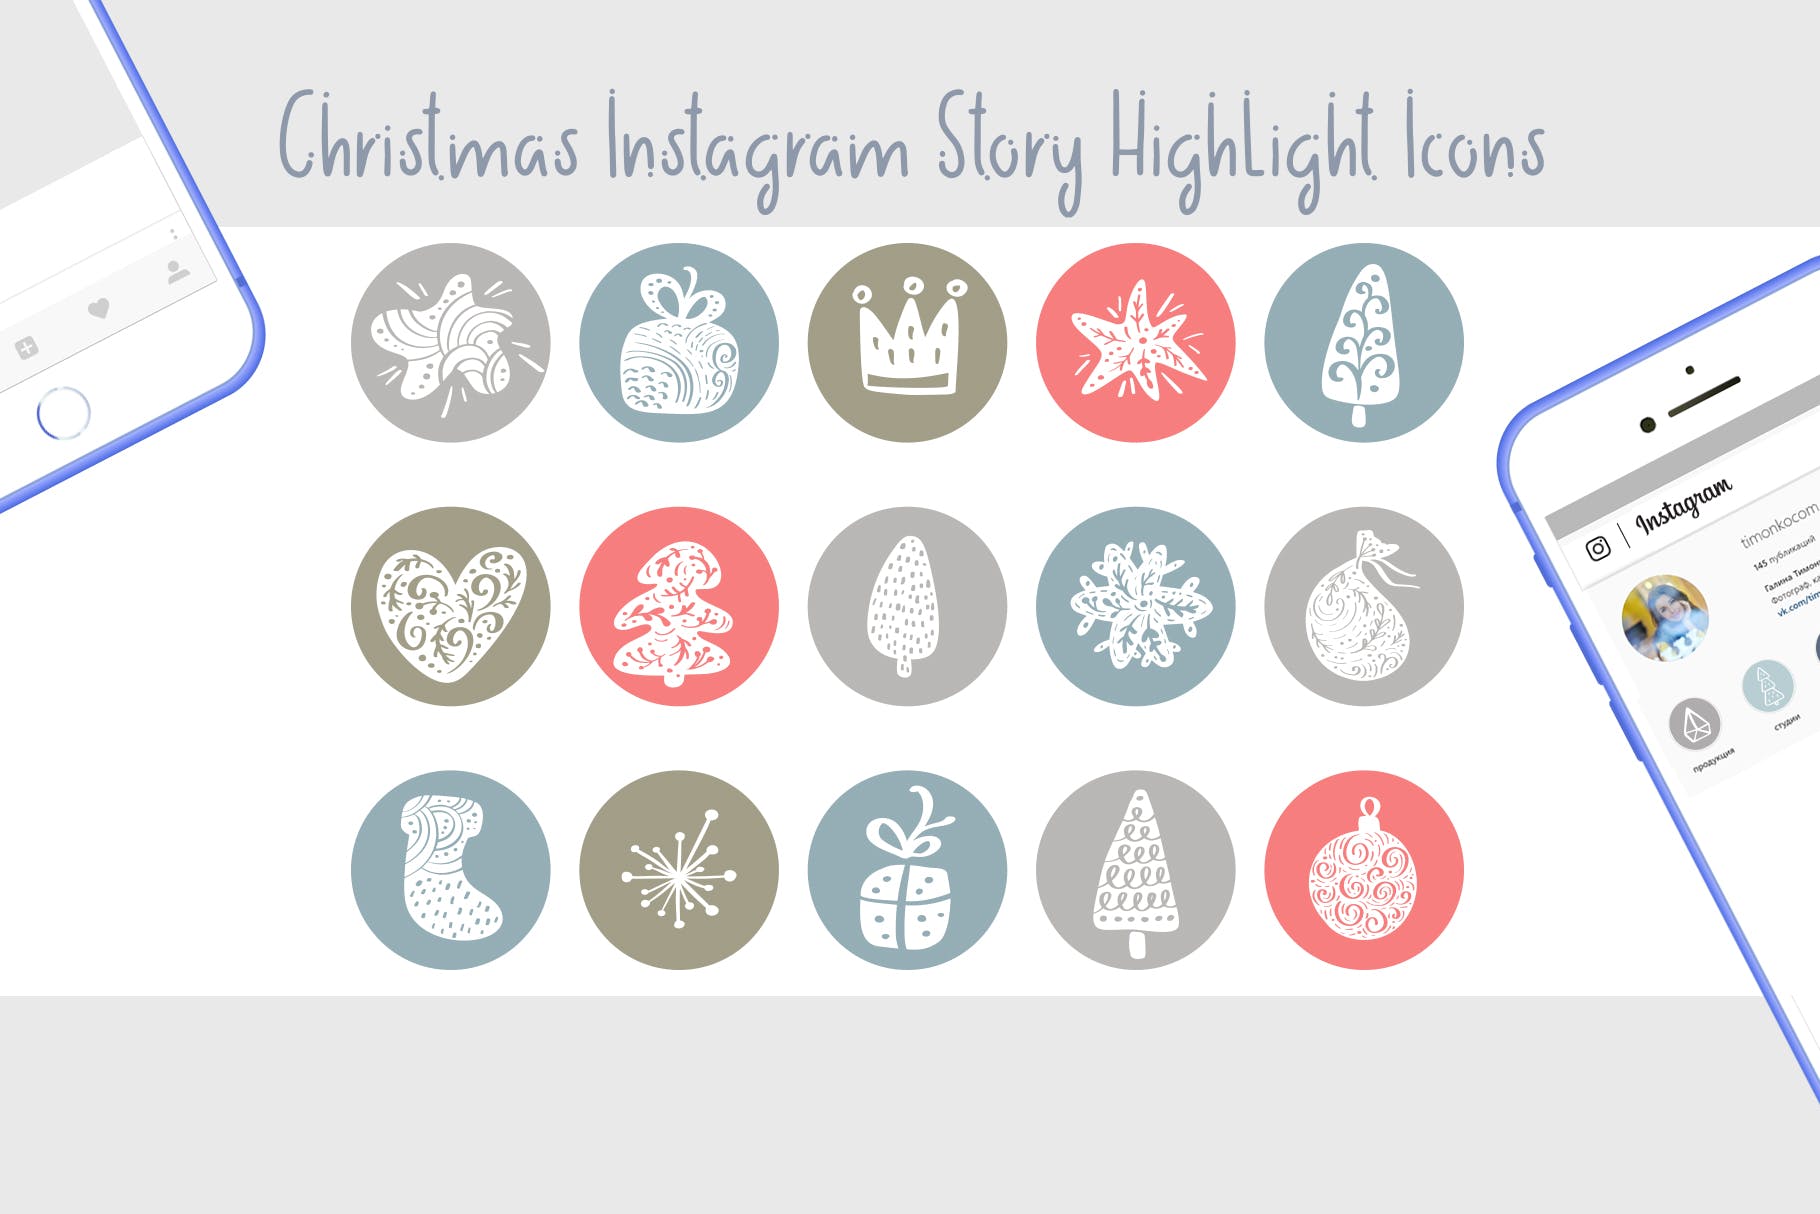 圣诞节主题矢量手绘16设计素材网精选图标素材 Christmas Instagram highlight story icons插图(1)